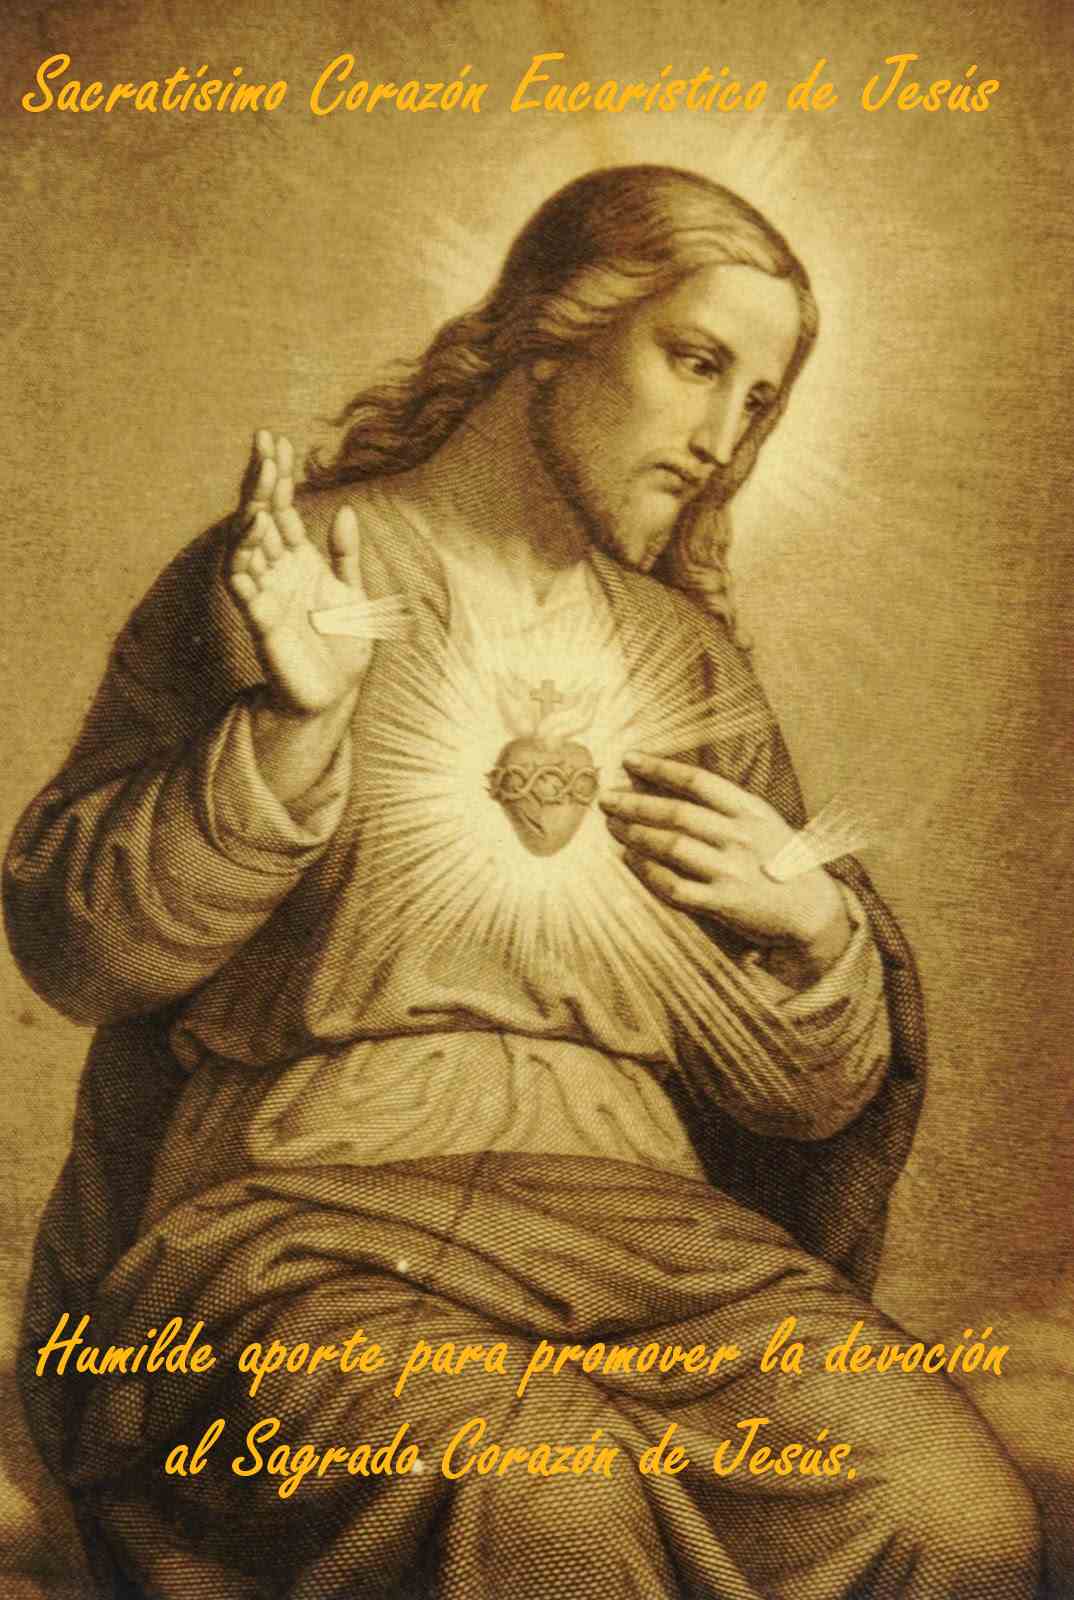 Sacratísimo Corazón Eucarístico de Jesús